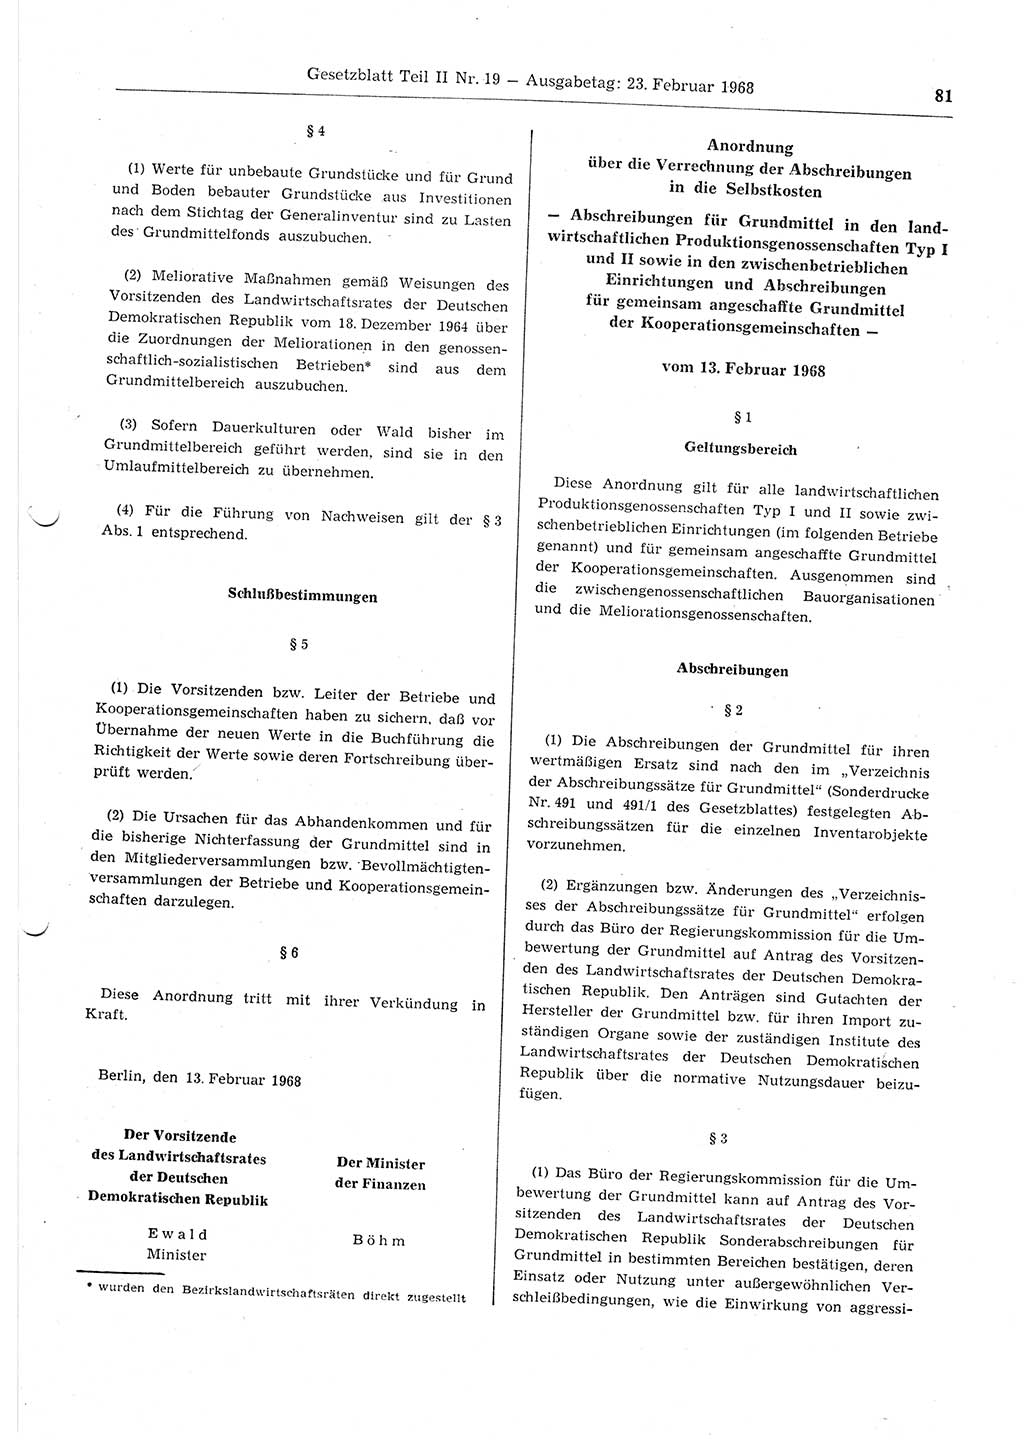 Gesetzblatt (GBl.) der Deutschen Demokratischen Republik (DDR) Teil ⅠⅠ 1968, Seite 81 (GBl. DDR ⅠⅠ 1968, S. 81)